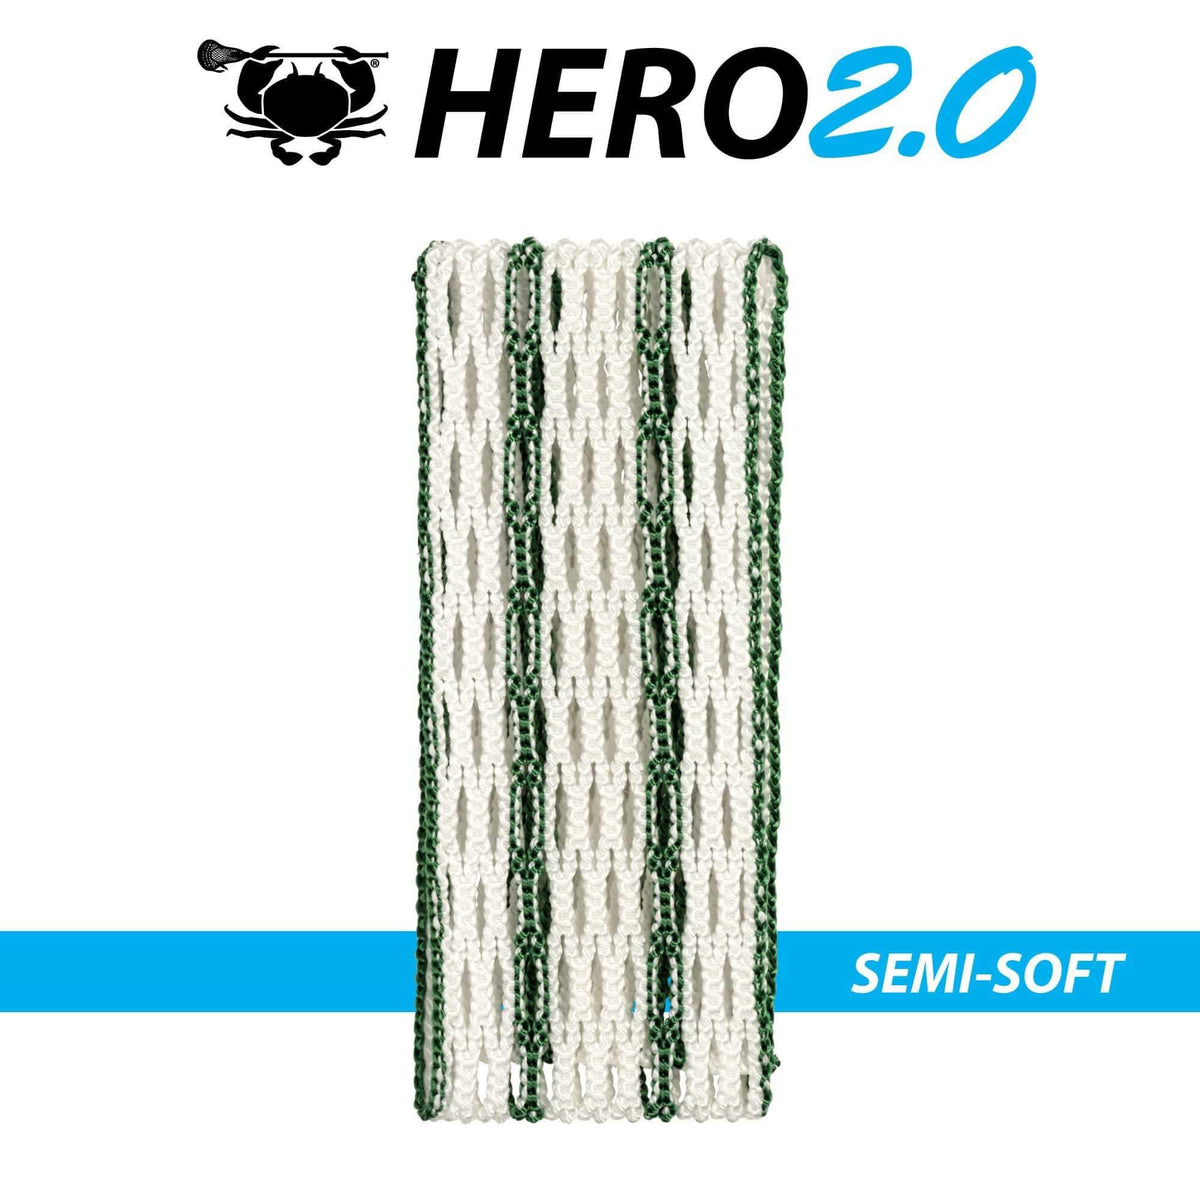 East Coast Dyes Stringing Supplies Semi-Soft / Kelly Green ECD Hero 2.0 Semi-Soft Striker Lacrosse Mesh from Lacrosse Fanatic